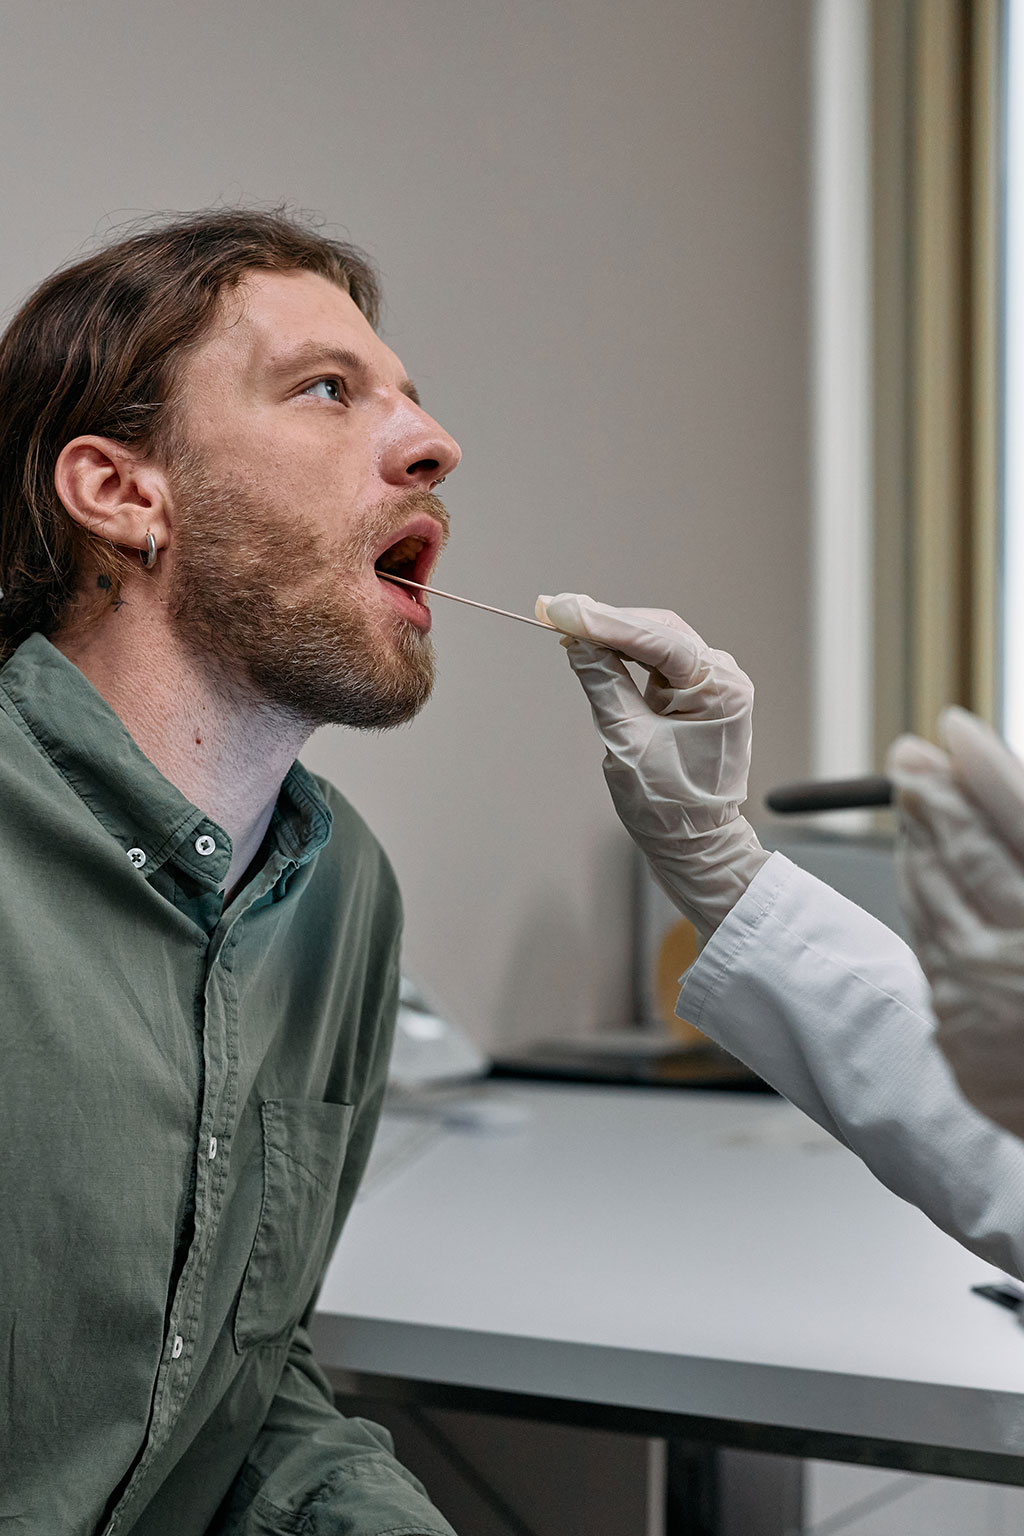 Imagen: Una investigación nueva respalda el uso de la saliva para el cribado a gran escala (Fotografía cortesía de Pexels)